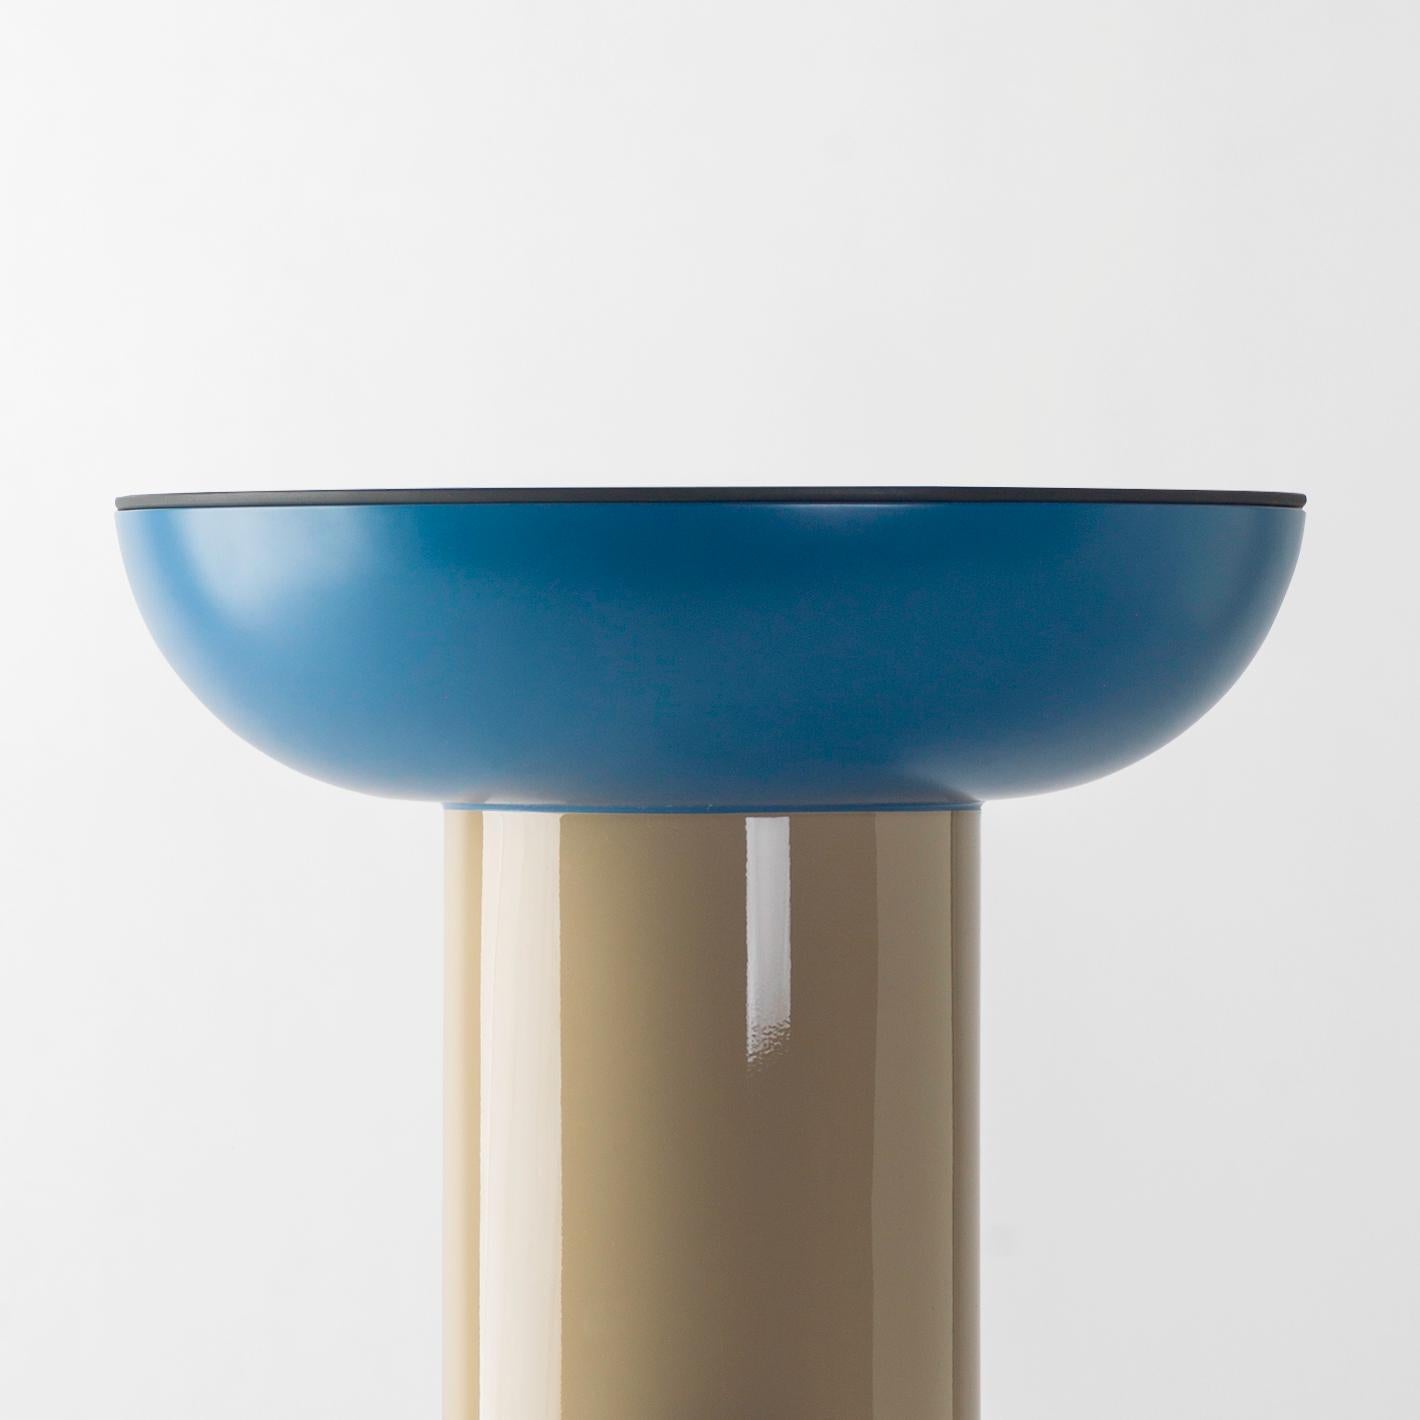 Multicolor Entdecker #01 Tisch

Entwurf von Jaime Hayon, 2019
Hergestellt von BD Barcelona.

Gehäuse aus lackiertem Glasfasergewebe. Massive gedrechselte Holzbeine und lackiert. Tischplatte aus lackiertem Glas.

Maße: 40 Ø x 50 cm

- Glas: RAL